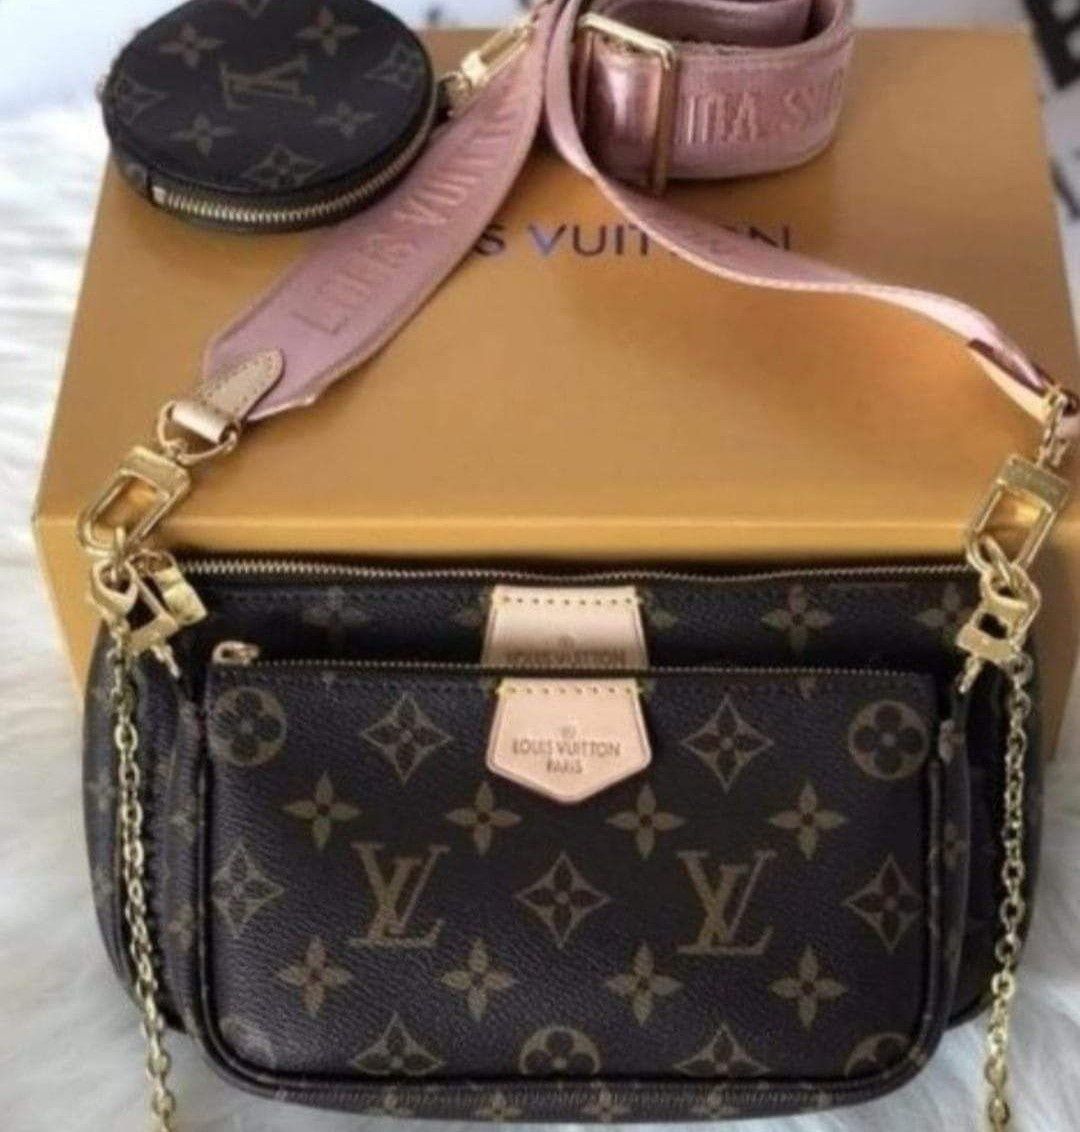 Geanta 3 în 1 Louis Vuitton, saculet  eticheta incluse